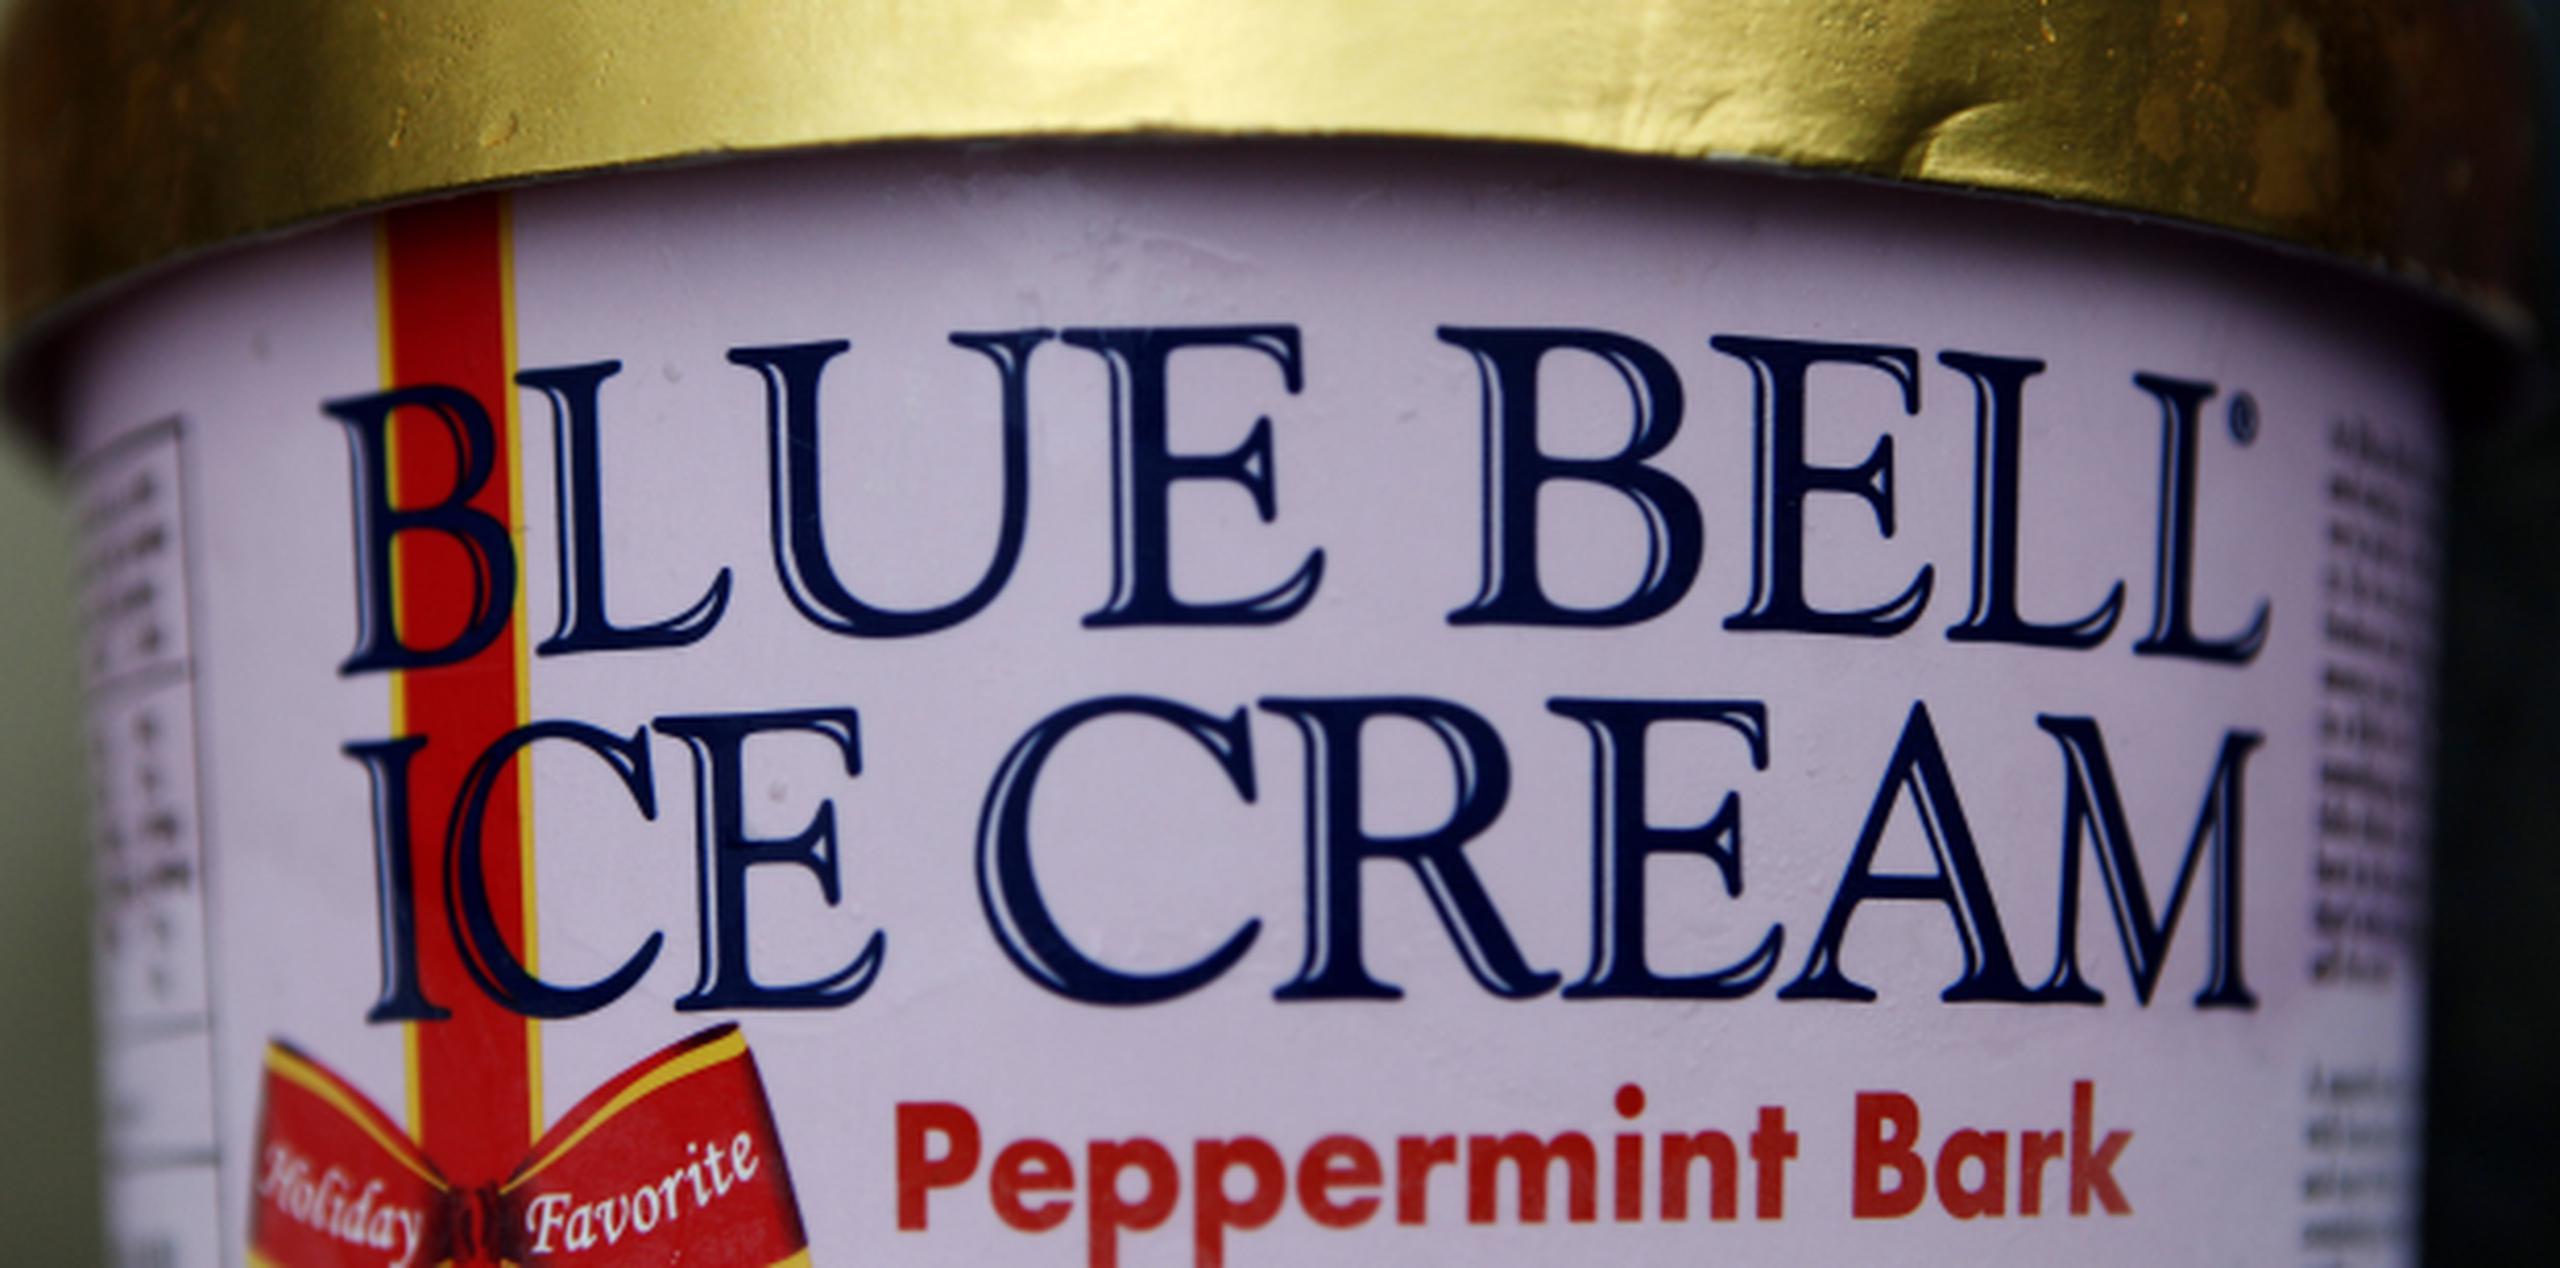 Semanas atrás, la fábrica de Blue Bell en Brenham, Texas, retiró de la venta varios productos de la misma línea tras detectar la presencia de listeria. (AP)